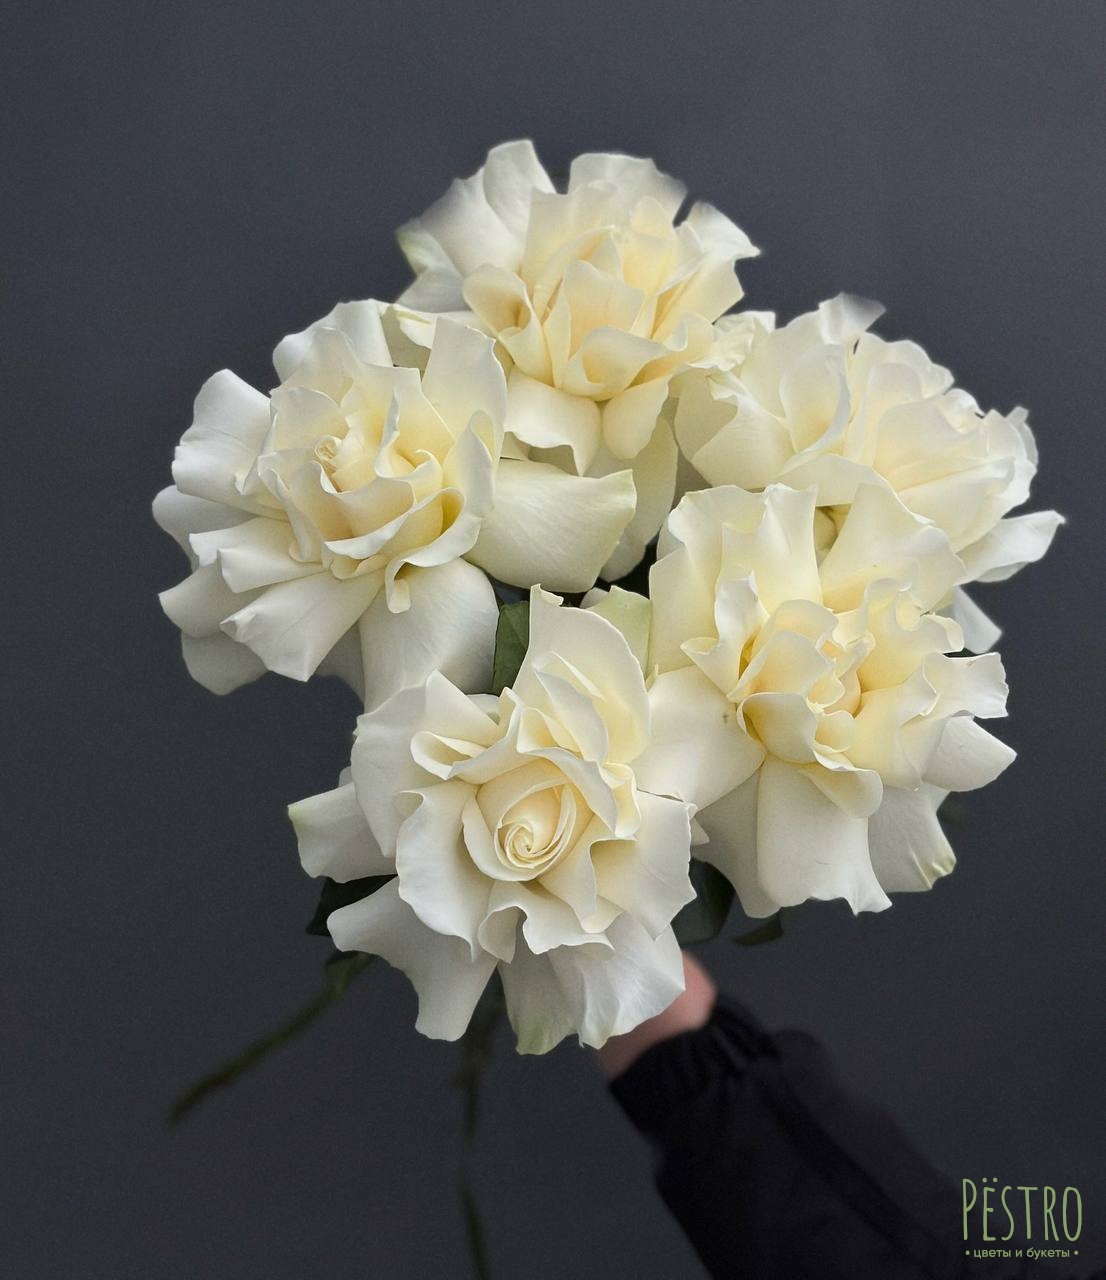 Французские белые розы 5 шт.